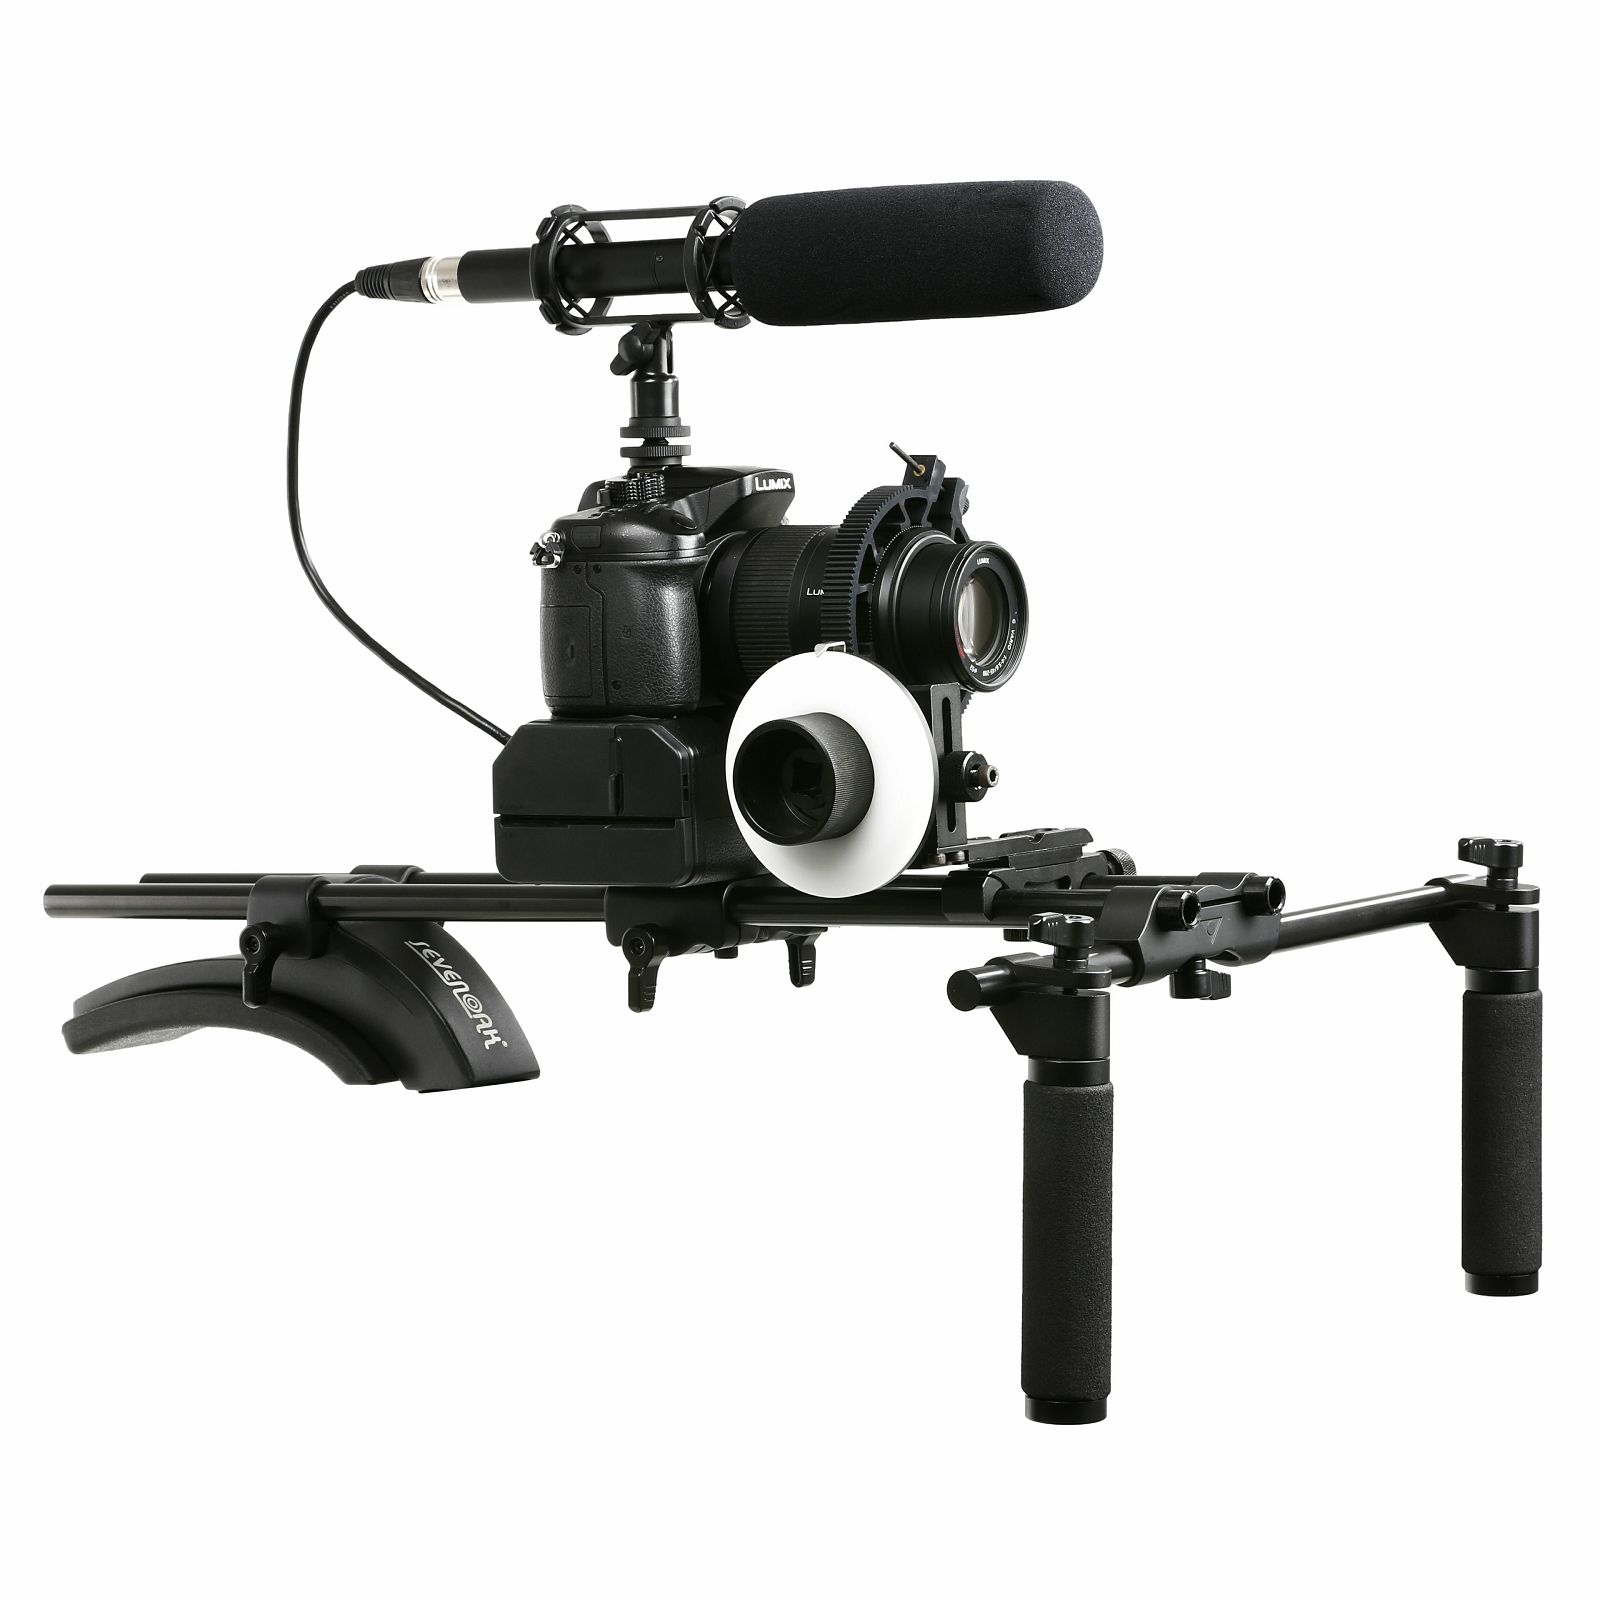 Sevenoak Shoulder Support Rig SK-R02 stabilizator za video snimanje